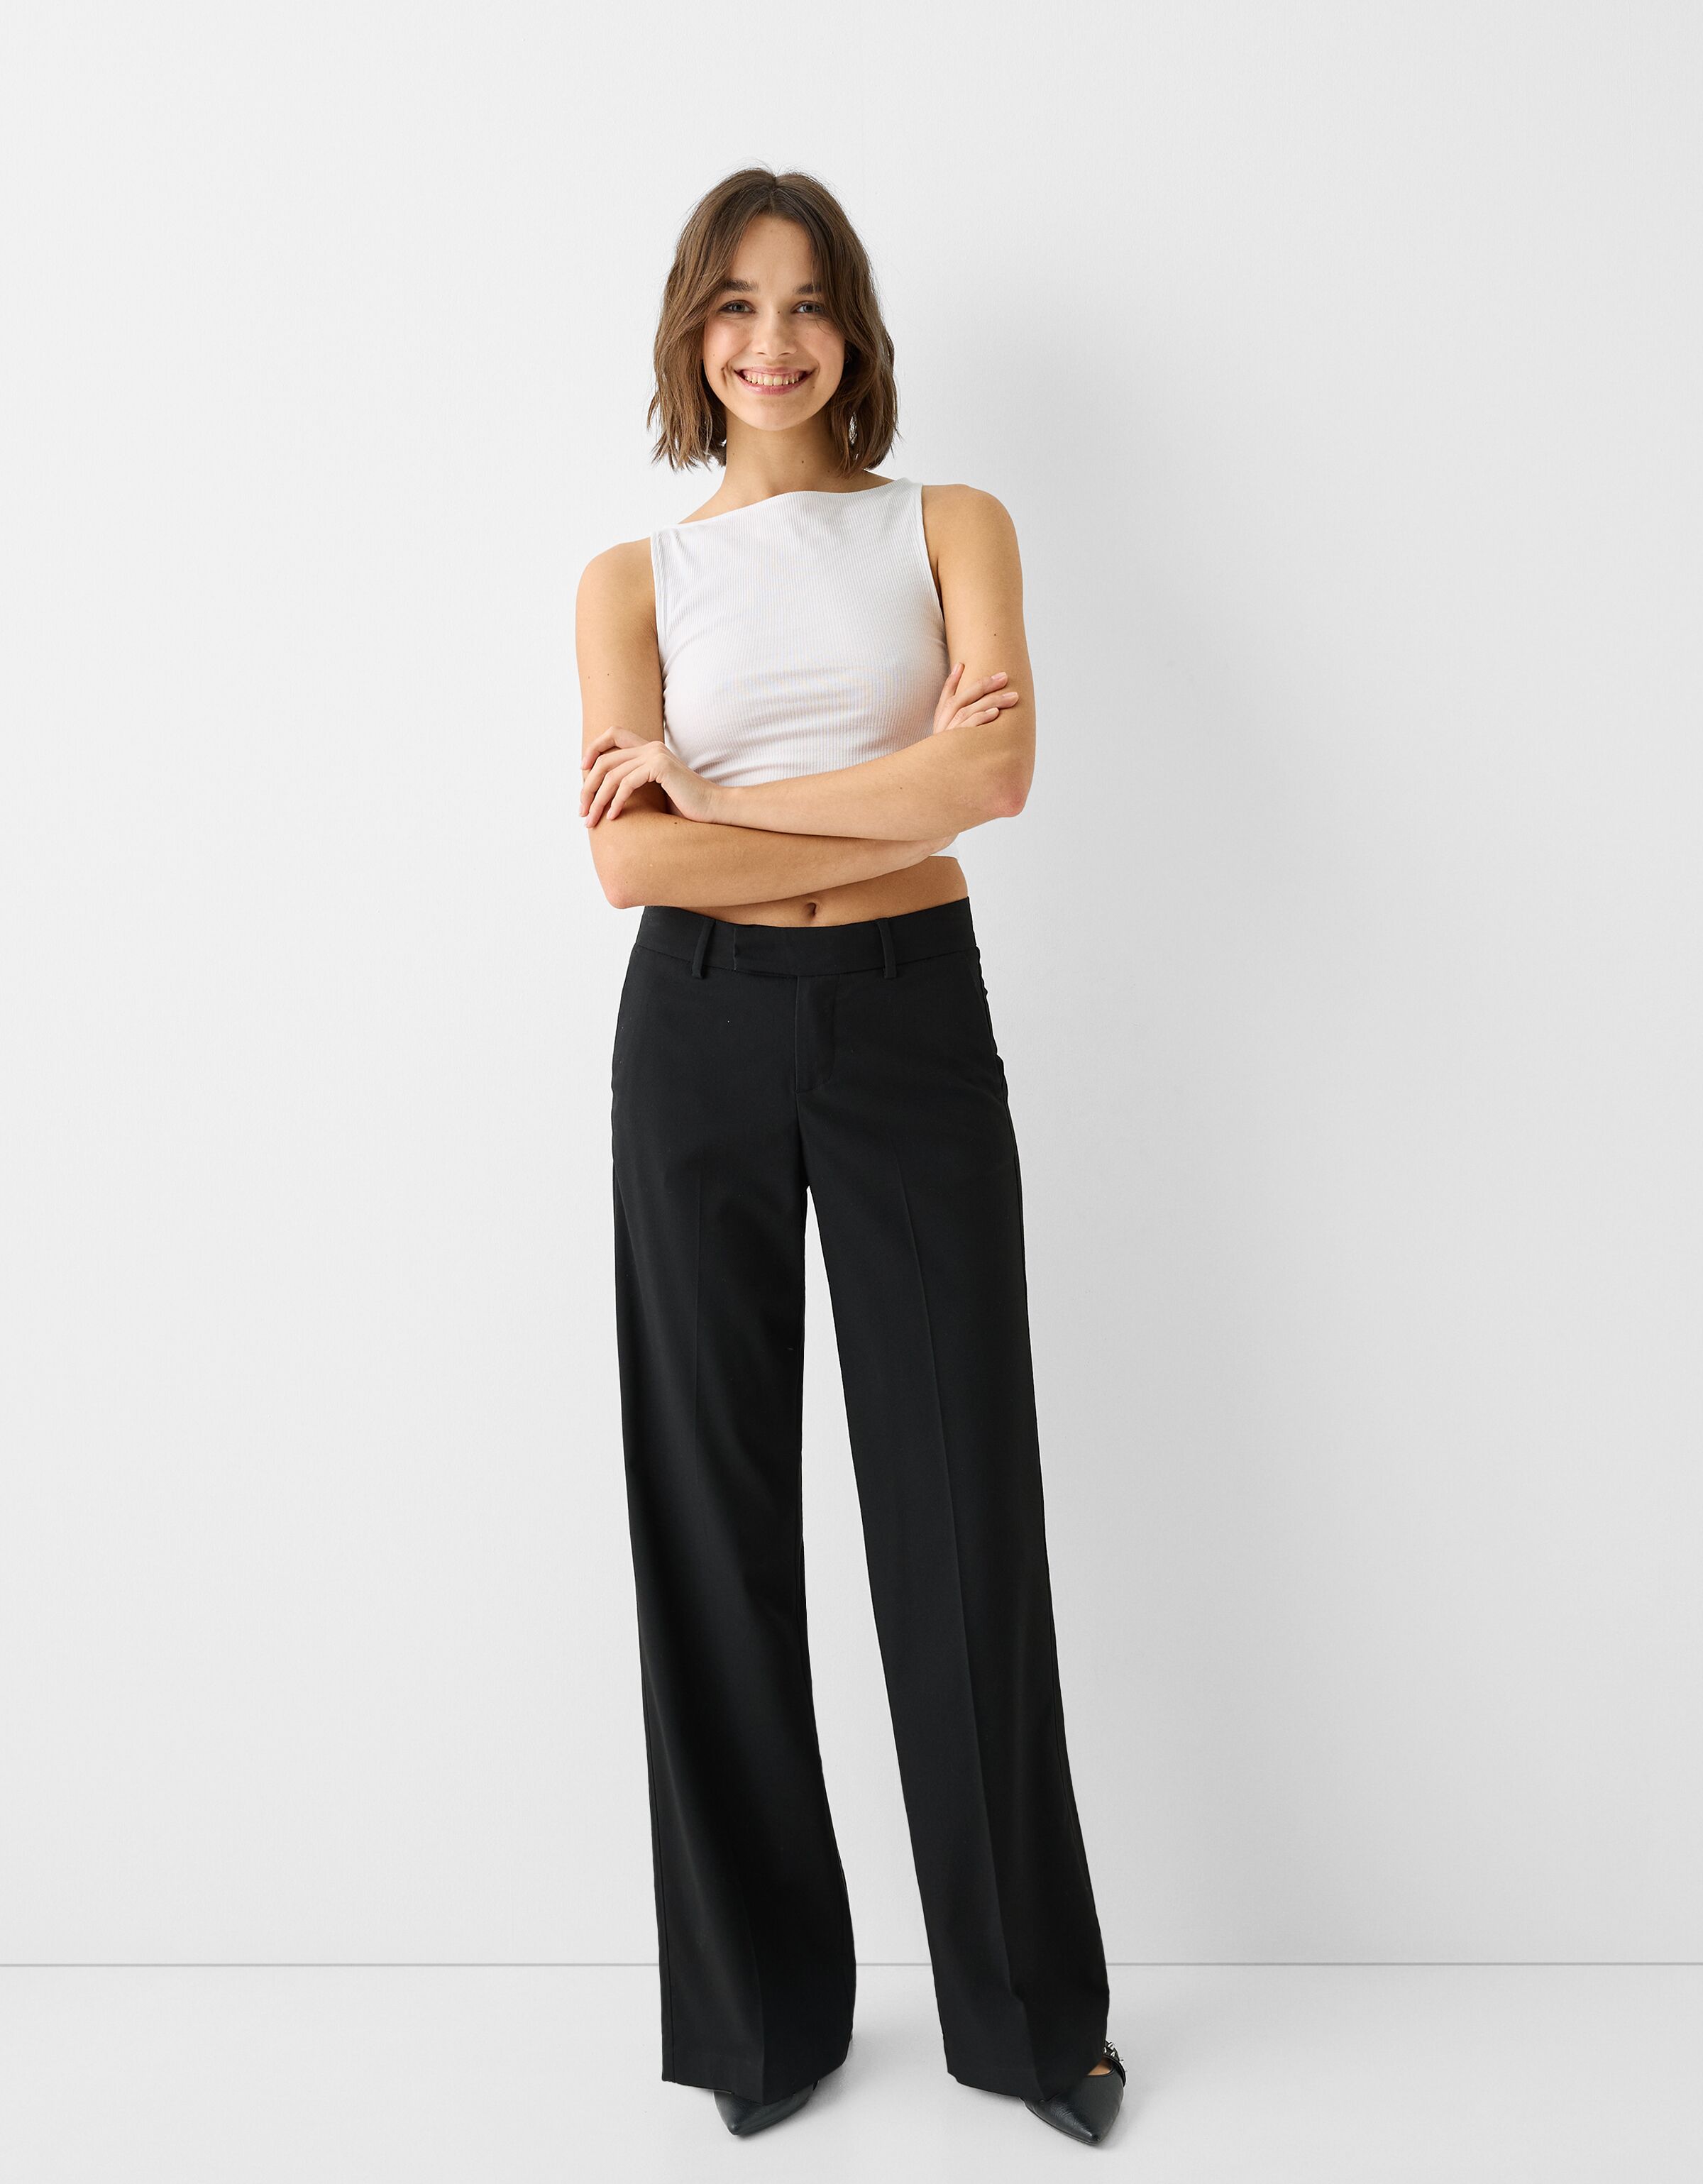 Buy Women's Cotton Lycra Semi-Formal Wear Slim Fit Pants|Cottonworld